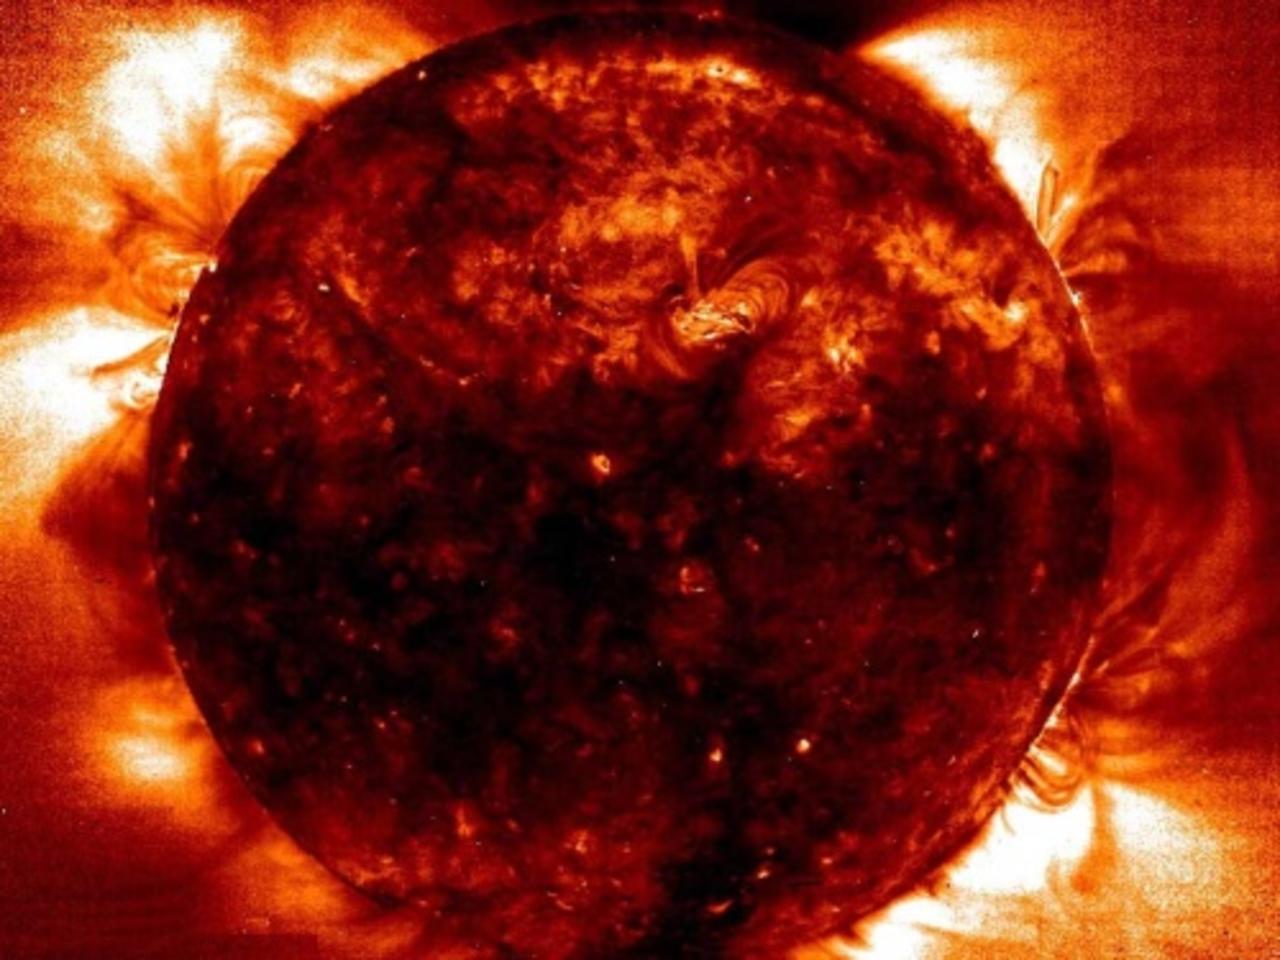 La aparición de agua en la Tierra podría tener su origen en el Sol, según propone una nueva teoría desarrollada por un equipo internacional de expertos que publica la revista Nature. (ESPECIAL)

 